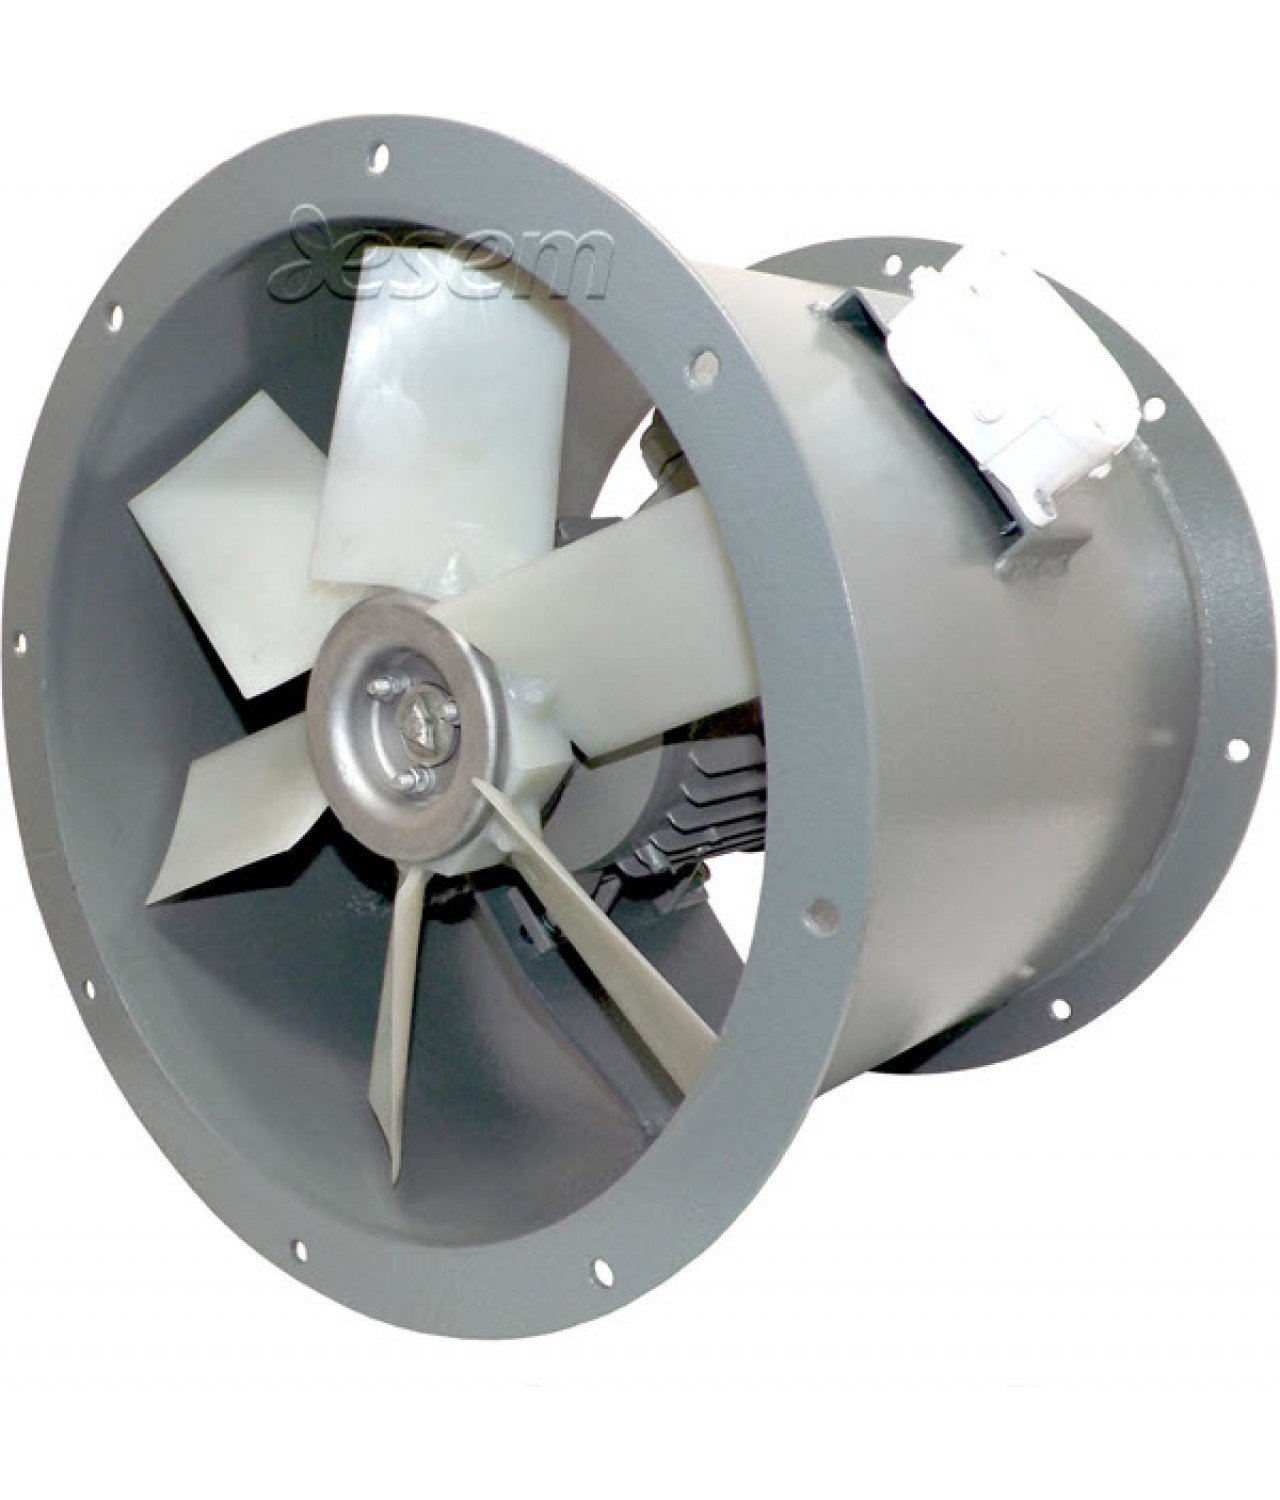 Heavy duty axial duct fans AVOFK ≤27000 m³/h